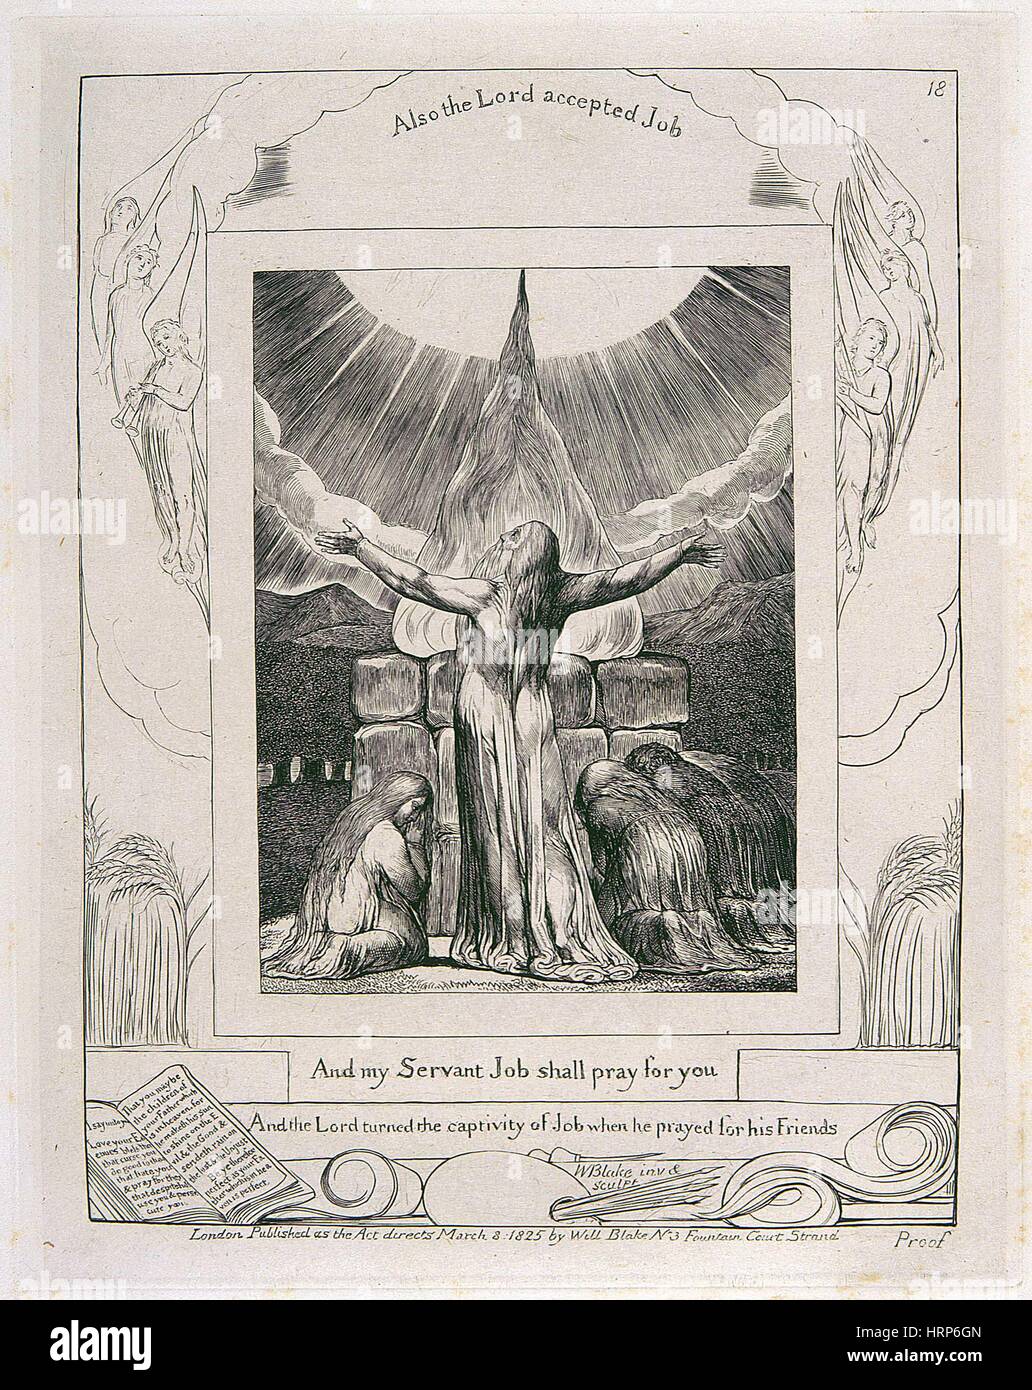 William Blake "Lavoro Sacrificio dell' Foto Stock